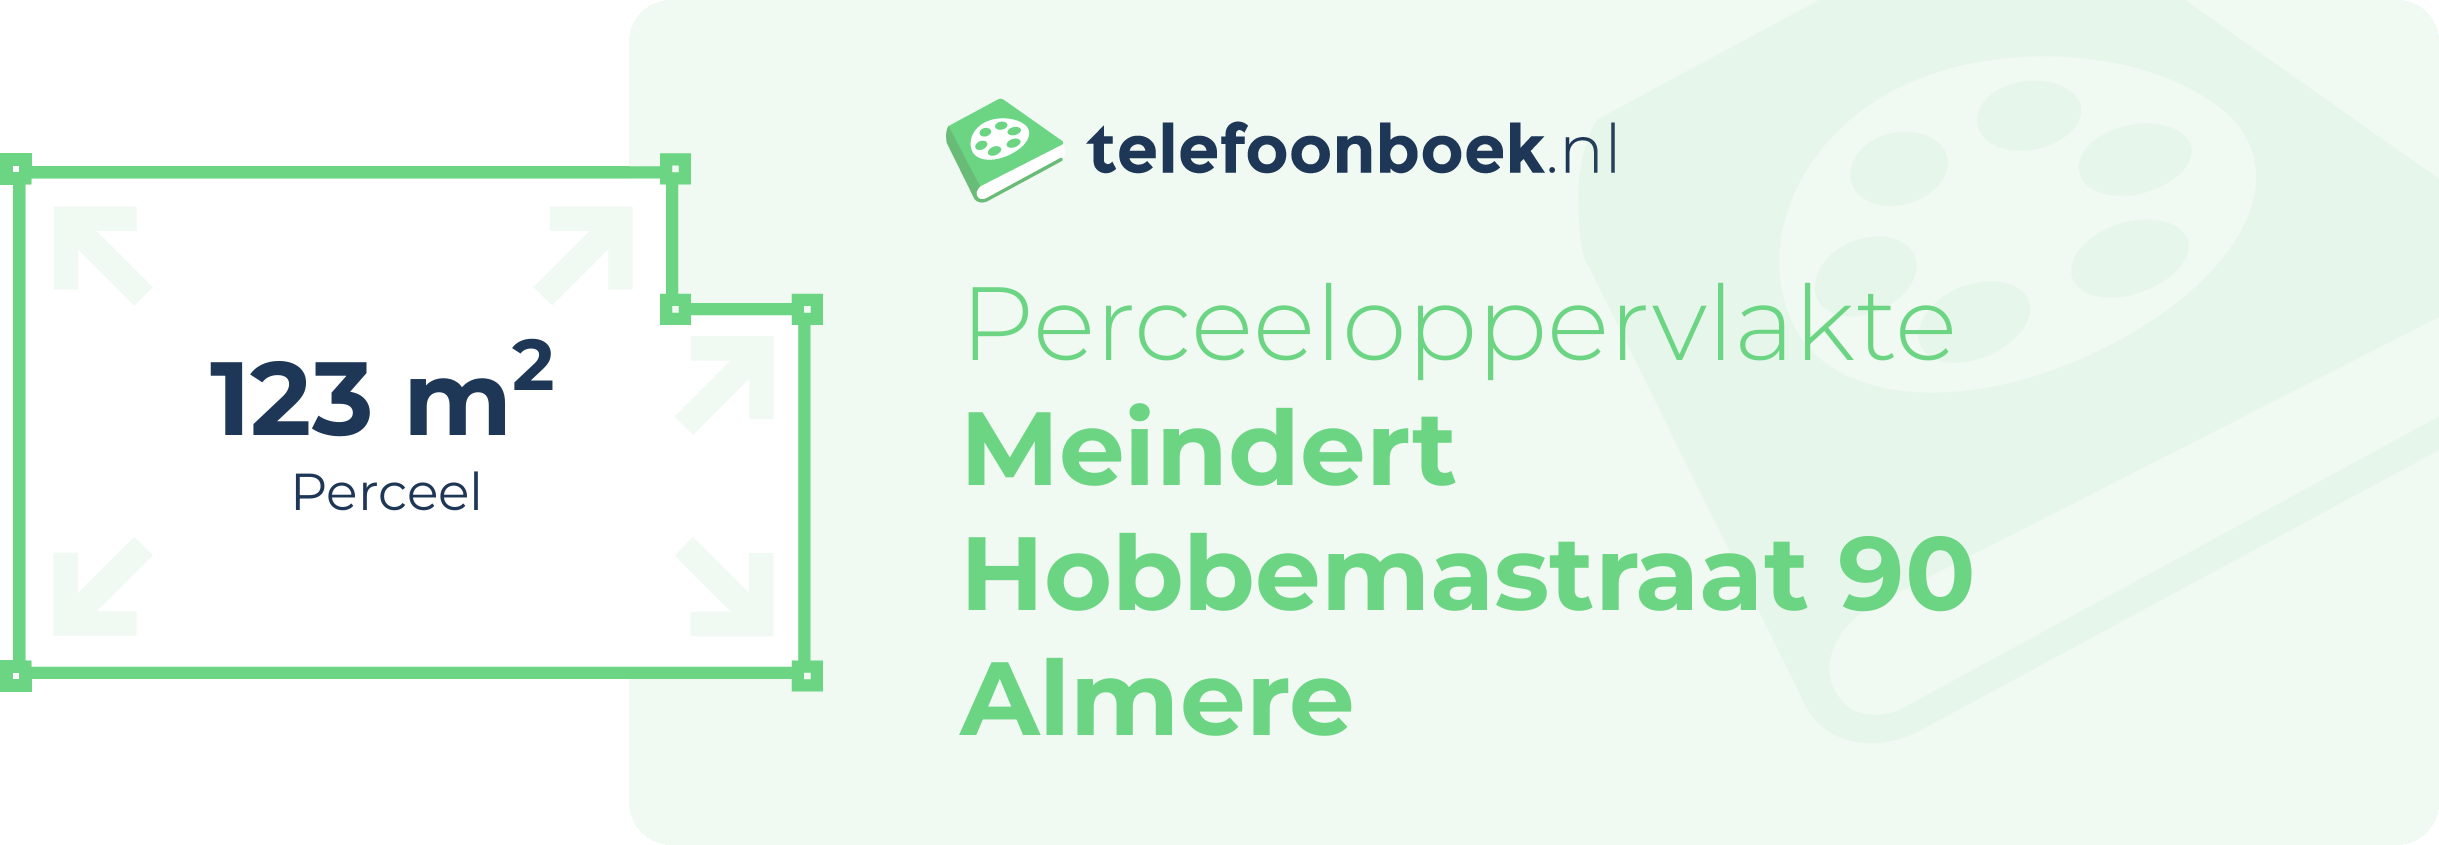 Perceeloppervlakte Meindert Hobbemastraat 90 Almere